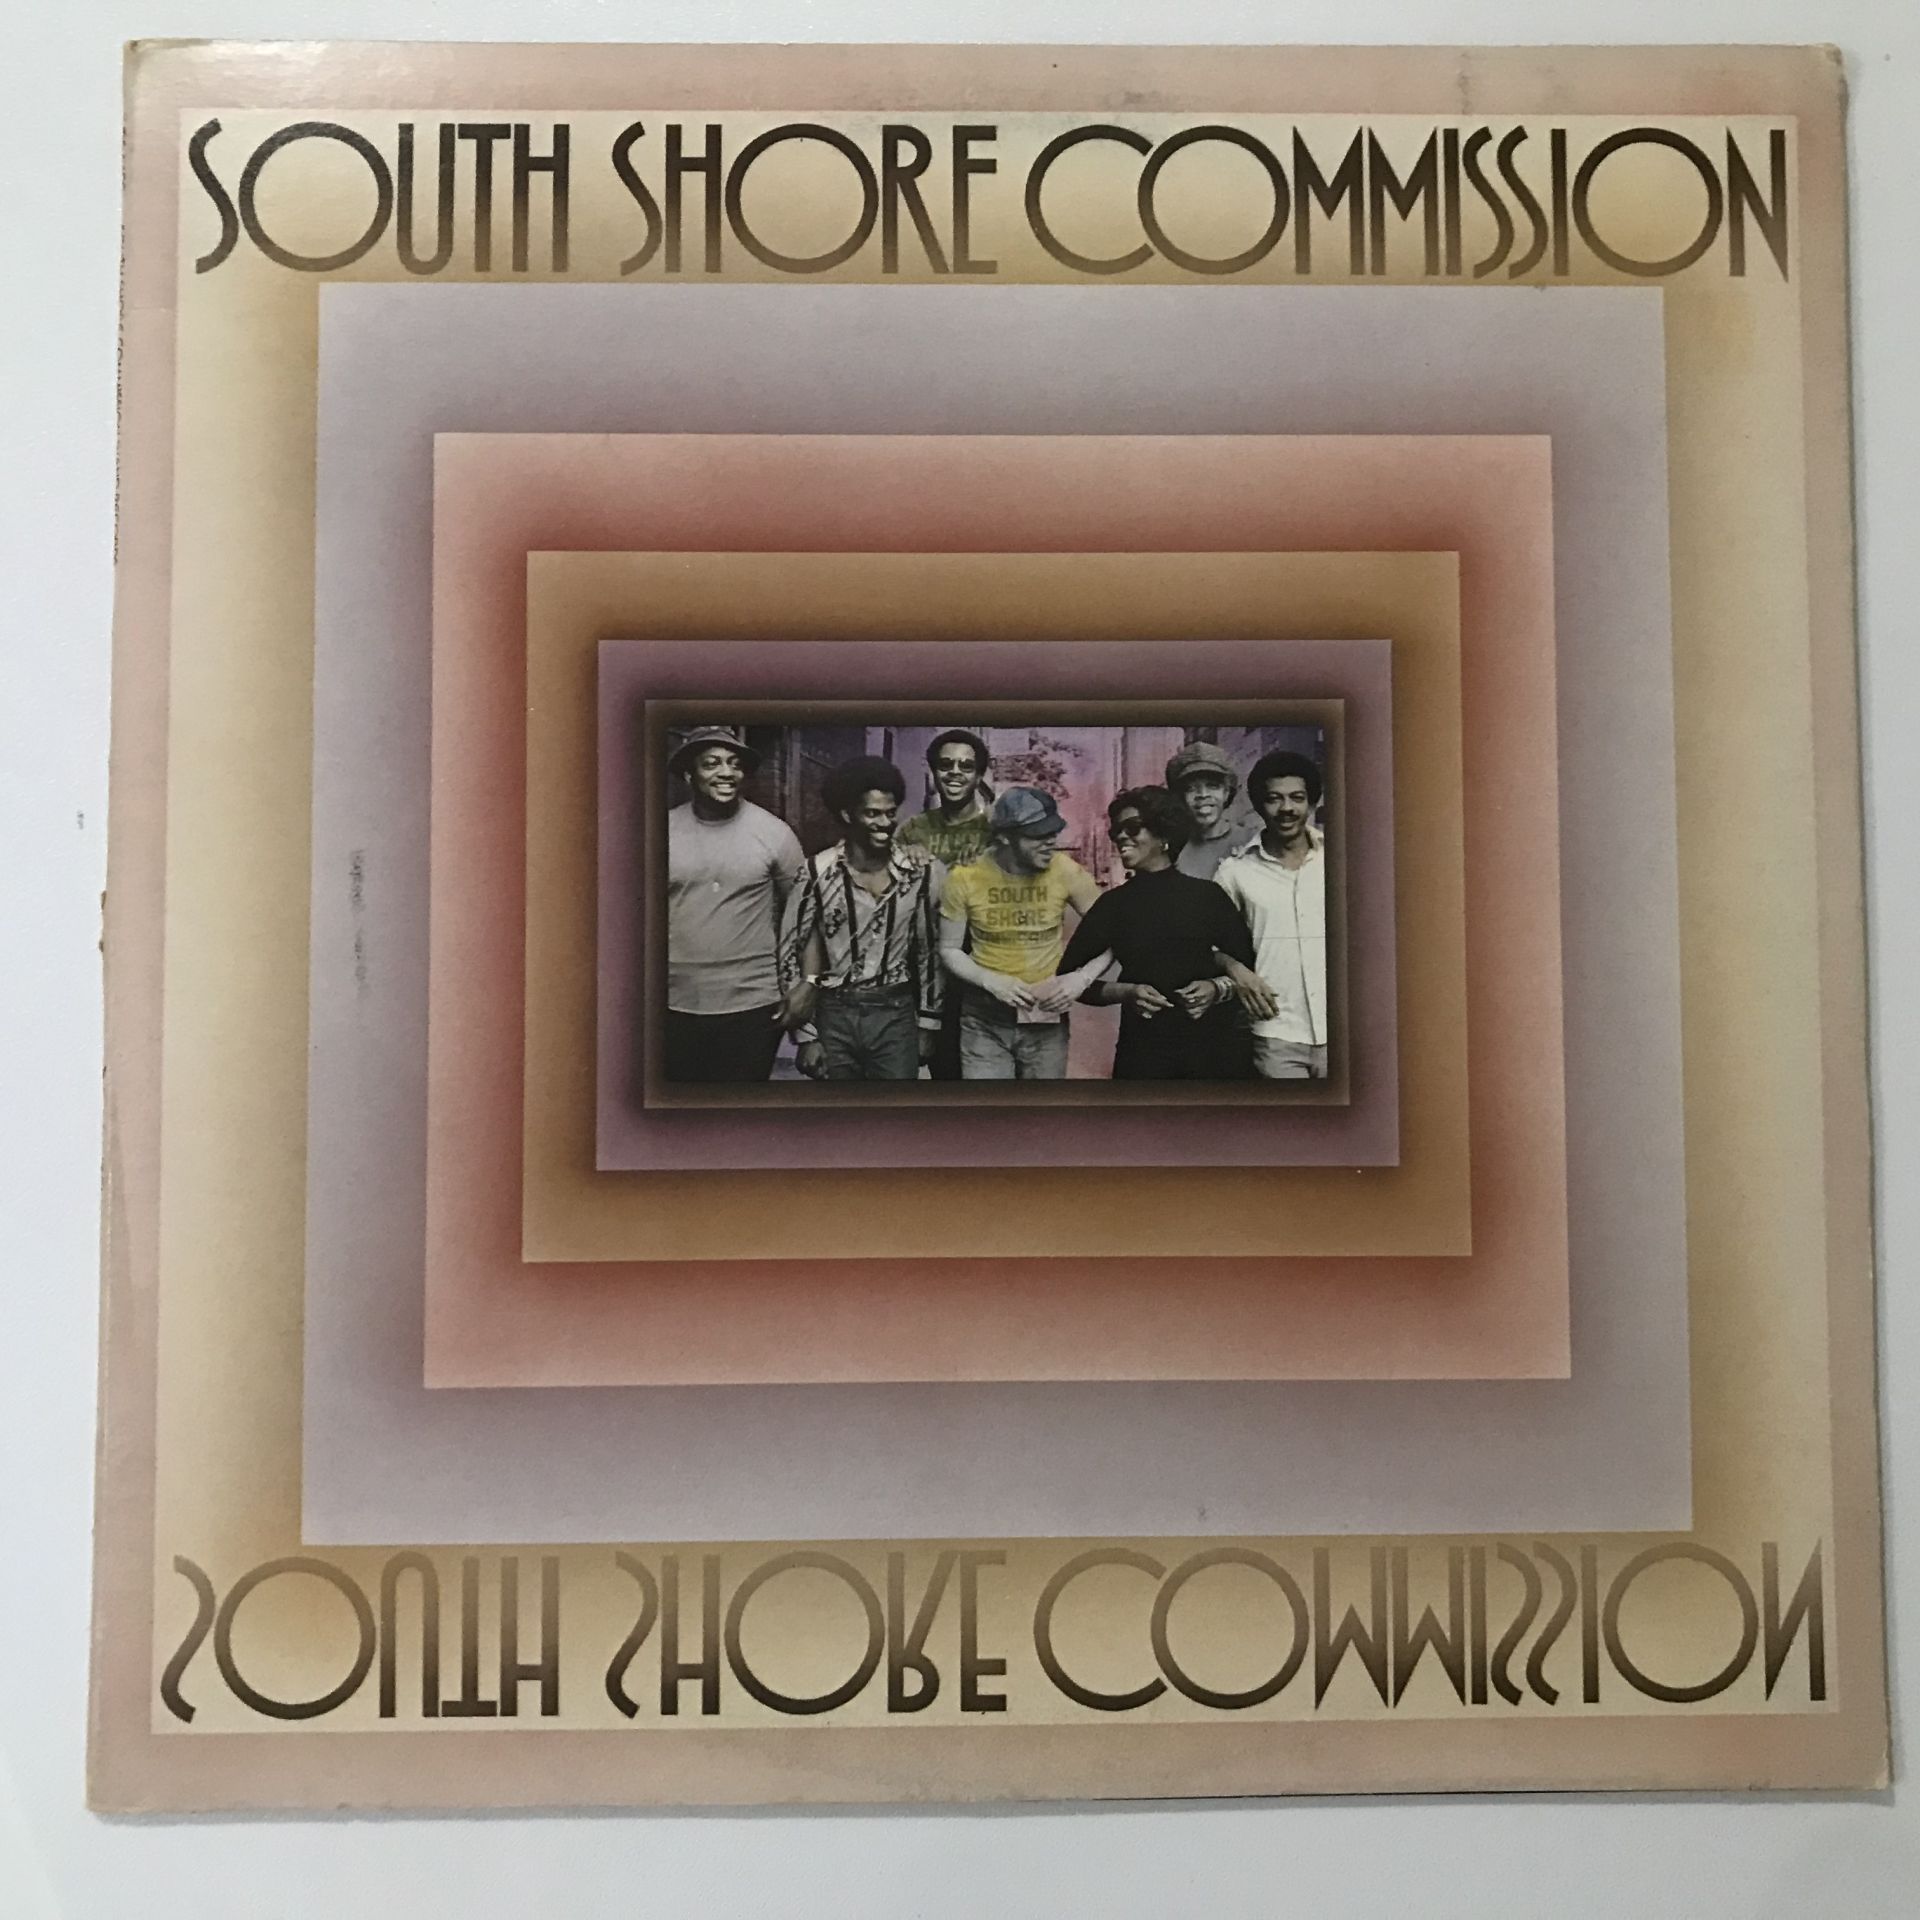 South Shore Commission – South Shore Commission